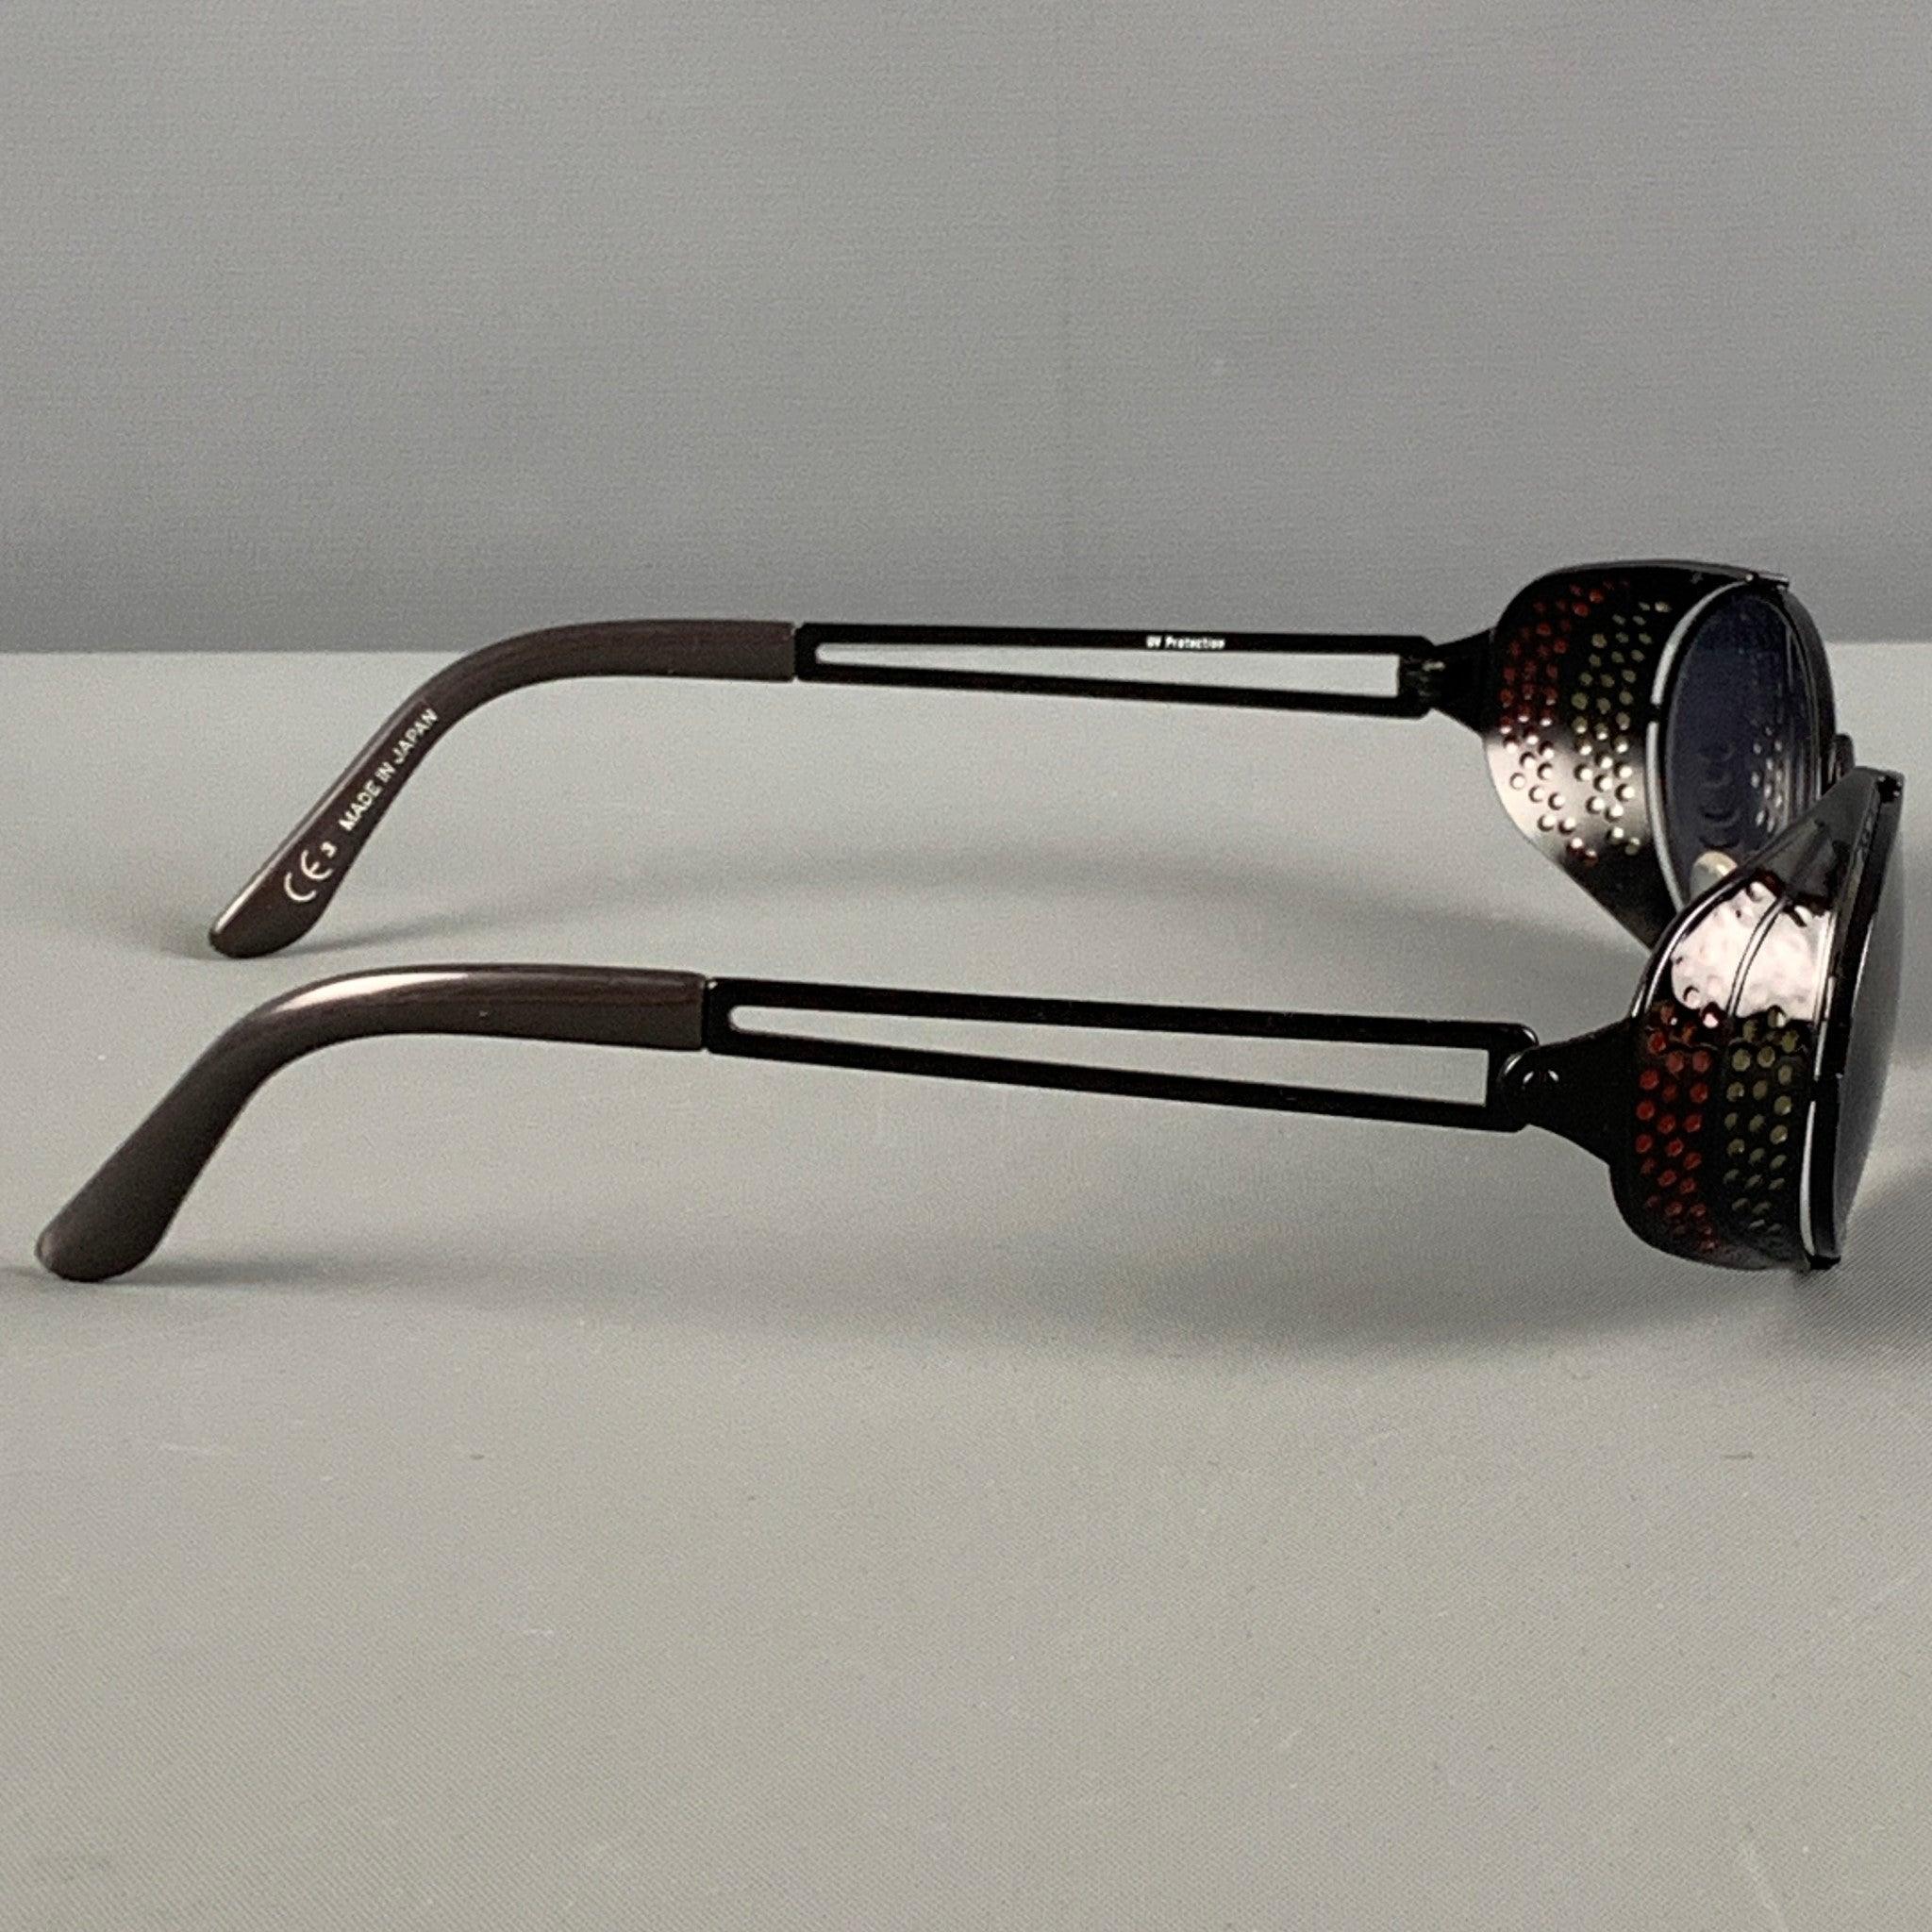 Vintage JEAN PAUL GAULTIER Sonnenbrille aus schwarzem und rotem Metall mit perforiertem Schilddesign, UV-Schutz und getönten Gläsern. Hergestellt in Japan.
Sehr gut
Gebrauchtes Zustand. 

Markiert:   7B  

Abmessungen: 
  Länge: 12 cm. Höhe: 3.5